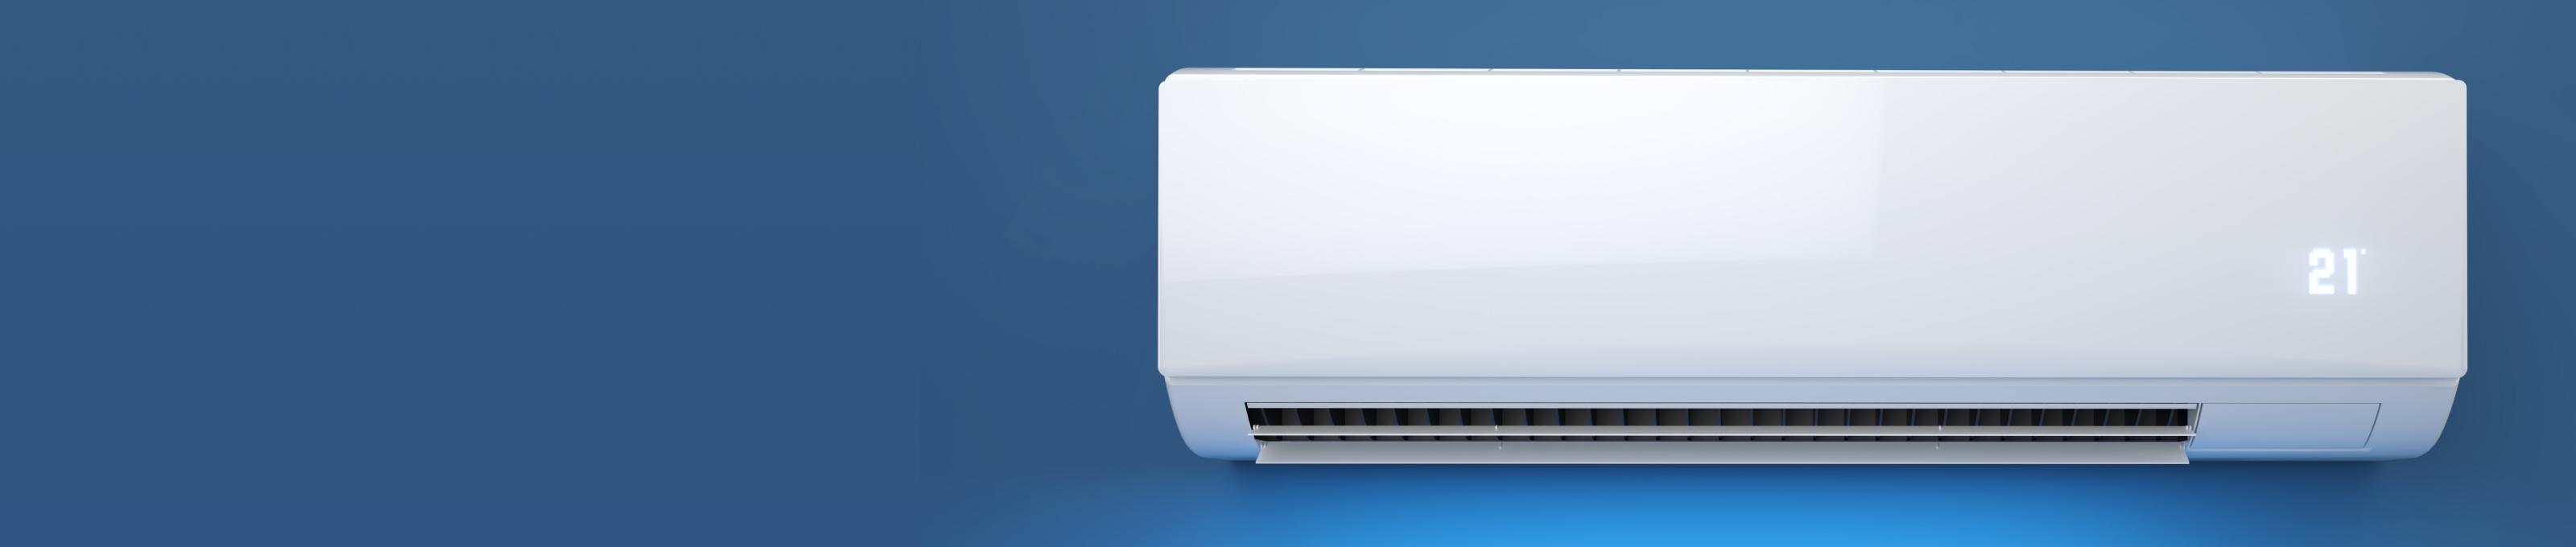 Air conditioner image